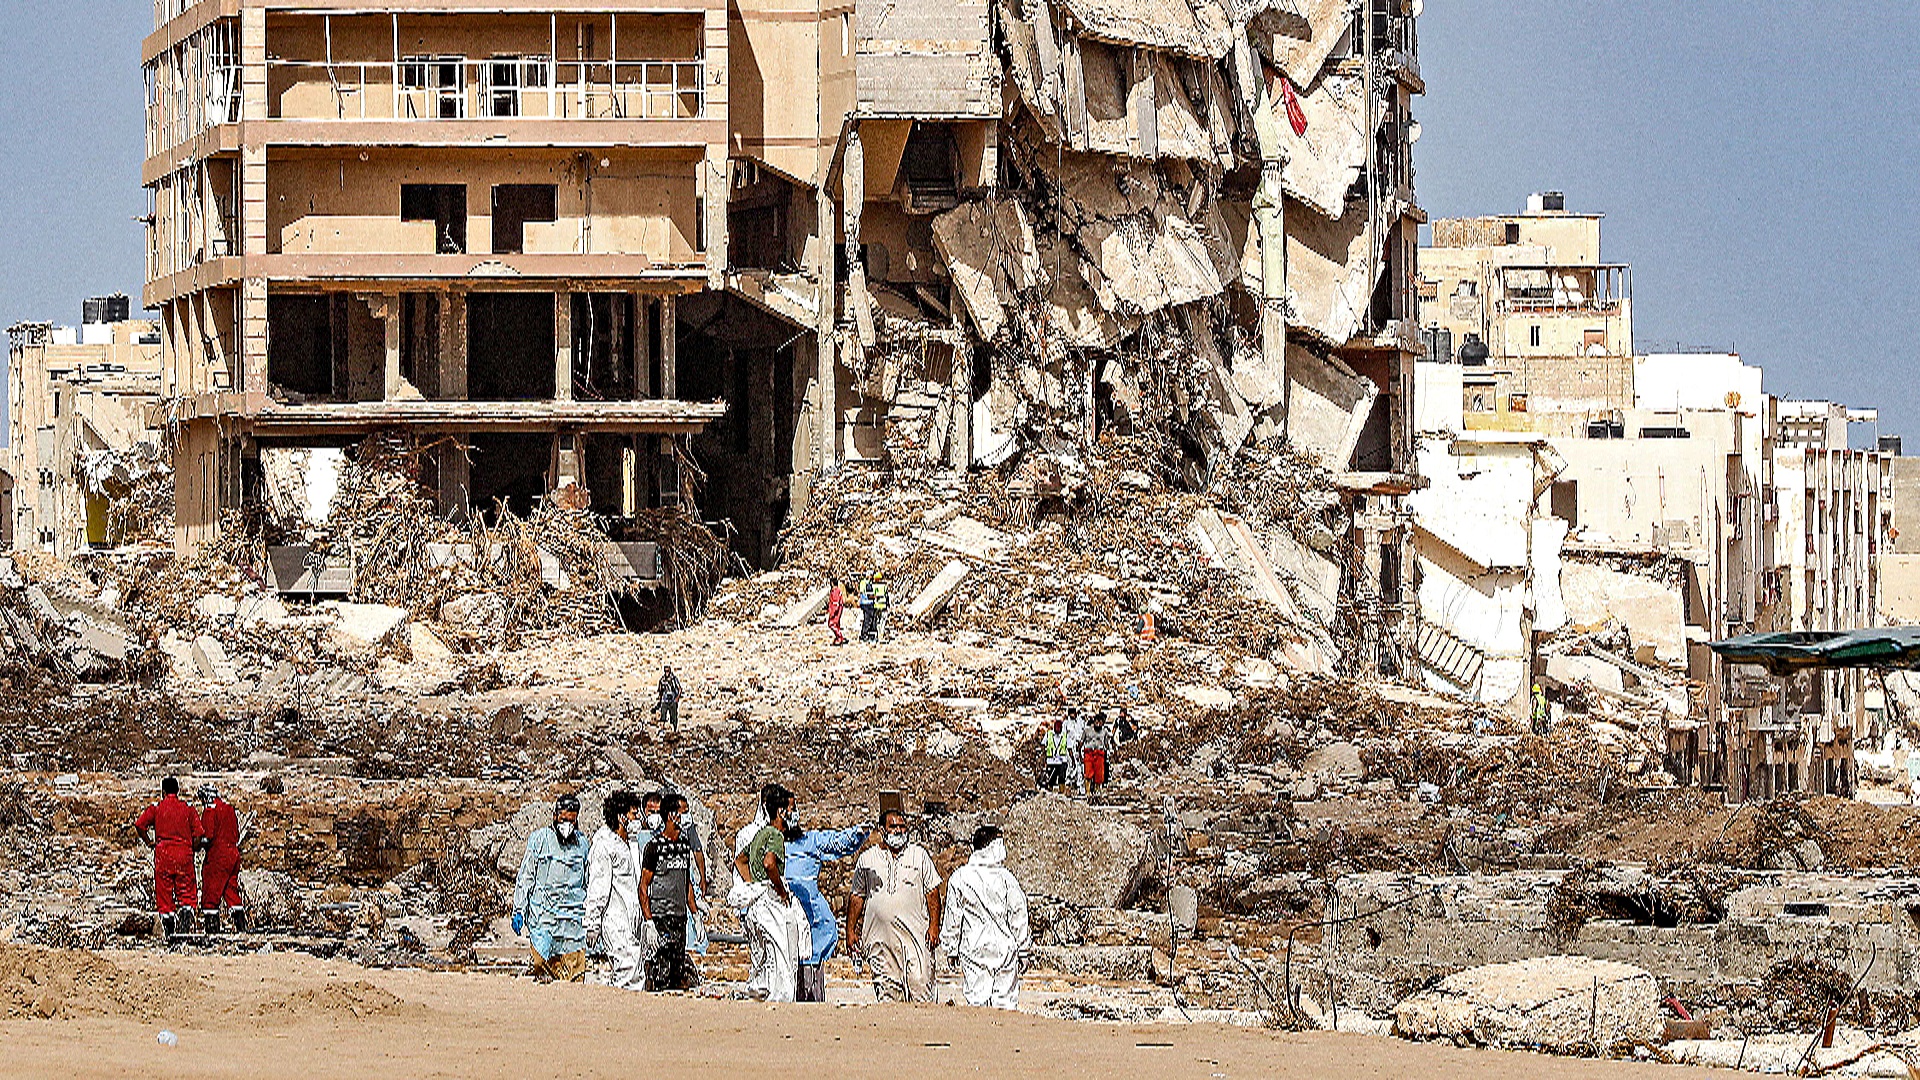 Ливийский город Дерна продолжает восстановление спустя 7 месяцев после бедствия